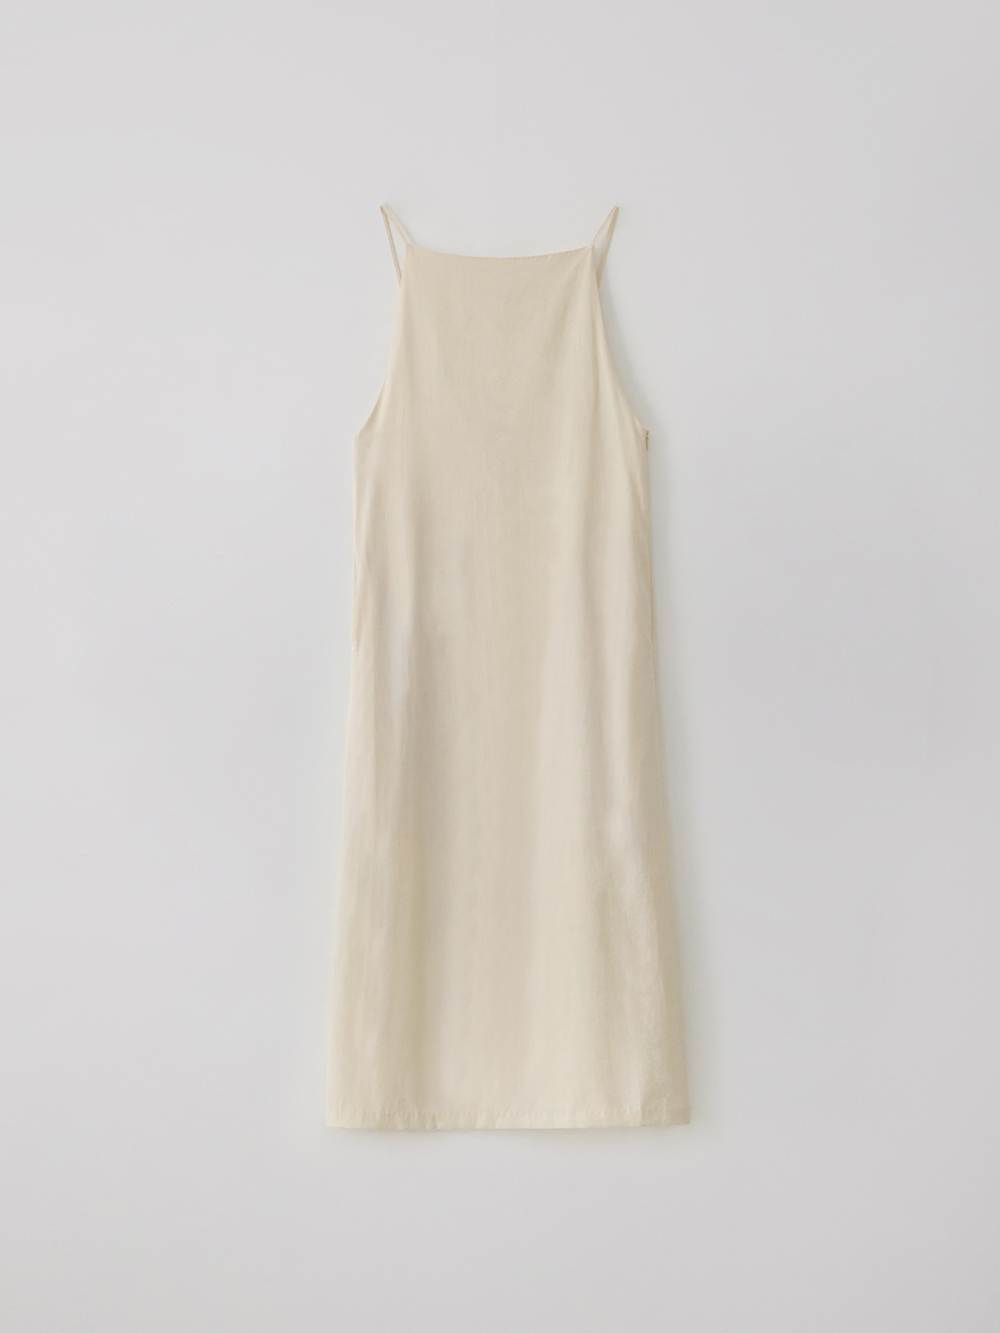 Linen strap dress (cream)